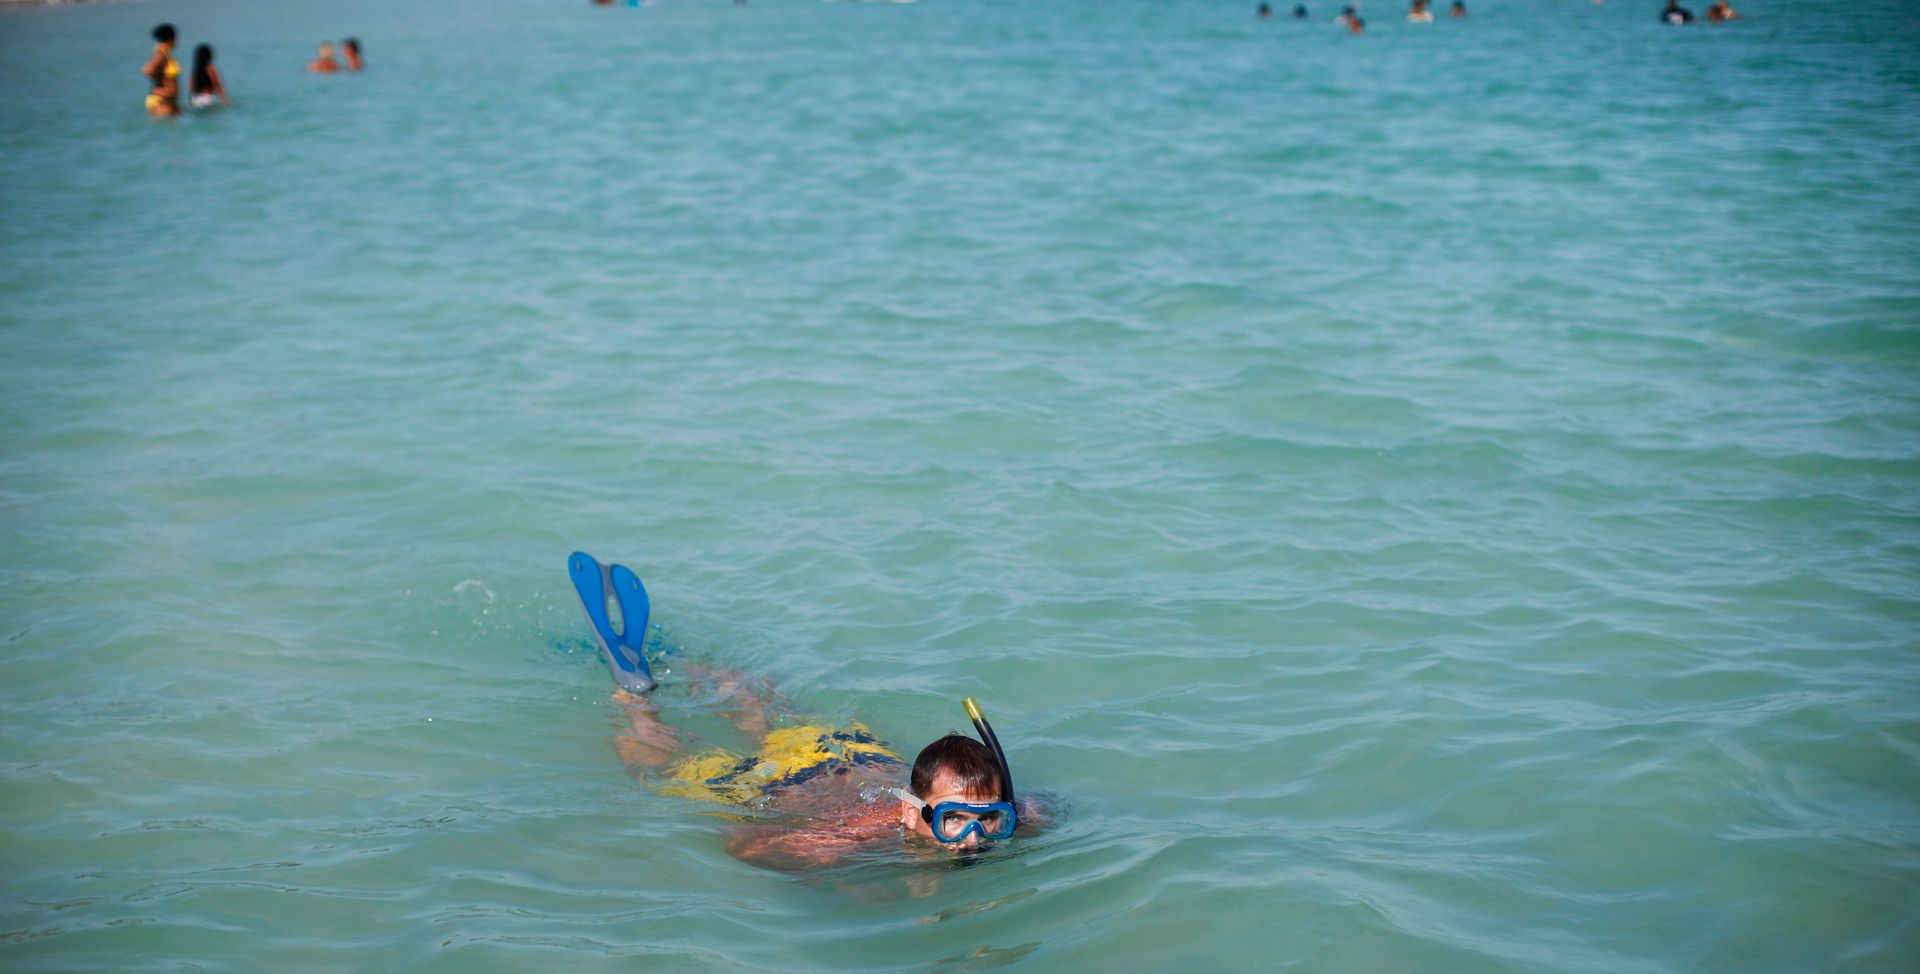 En mann med badeshorts, snorkel og svømmeføtter svømmer i turkist, rolig vann mens han kikker opp på fotografen.